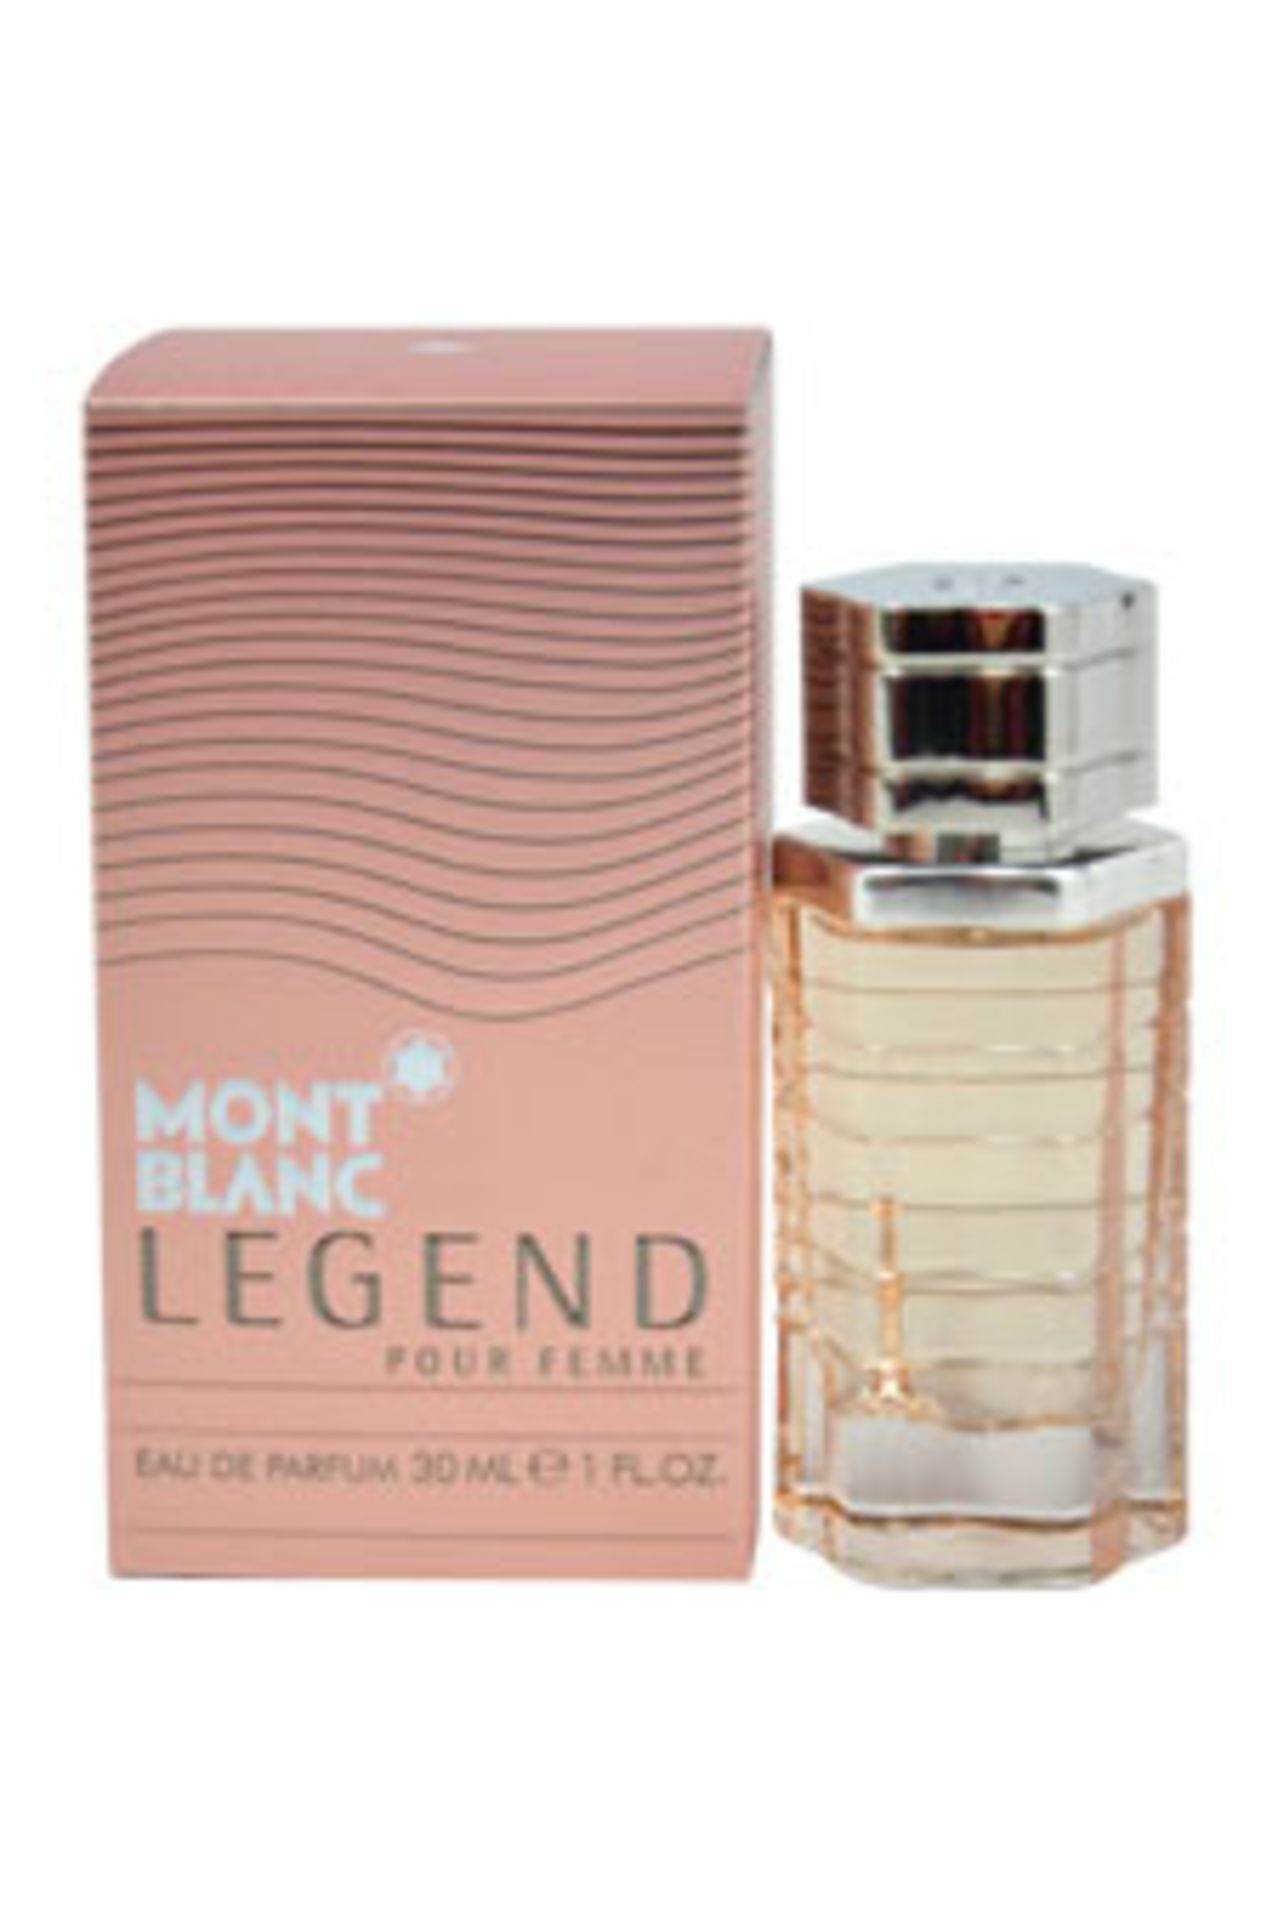 V Brand New 30ml Mont Blanc Legend Pour Femme Eau De Parfum X 2 YOUR BID PRICE TO BE MULTIPLIED BY